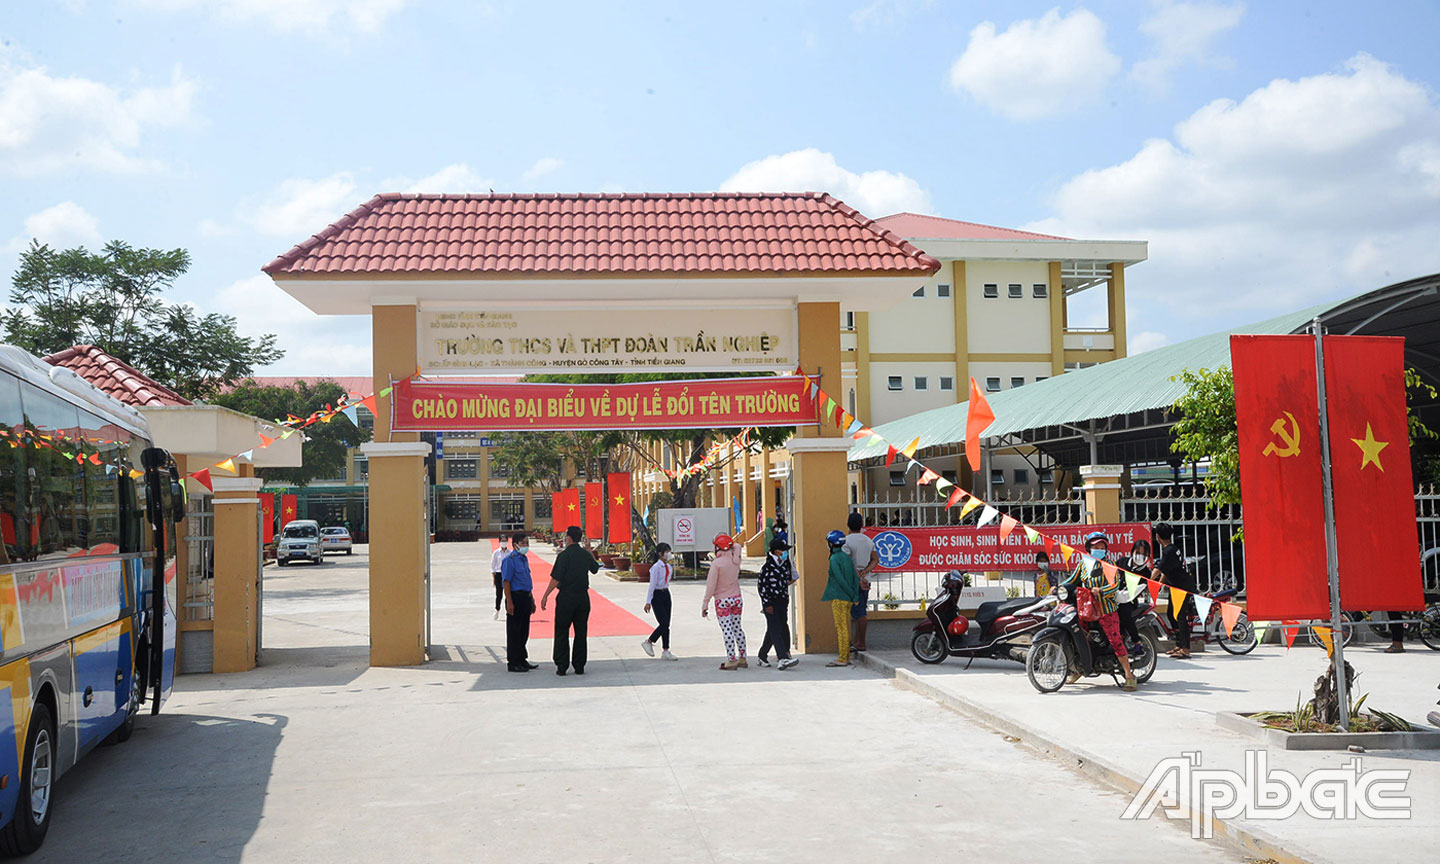 Trường THCS và THPT Phú Thành vừa được đổi tên thành Trường THCS và THPT Đoàn Trần Nghiệp.